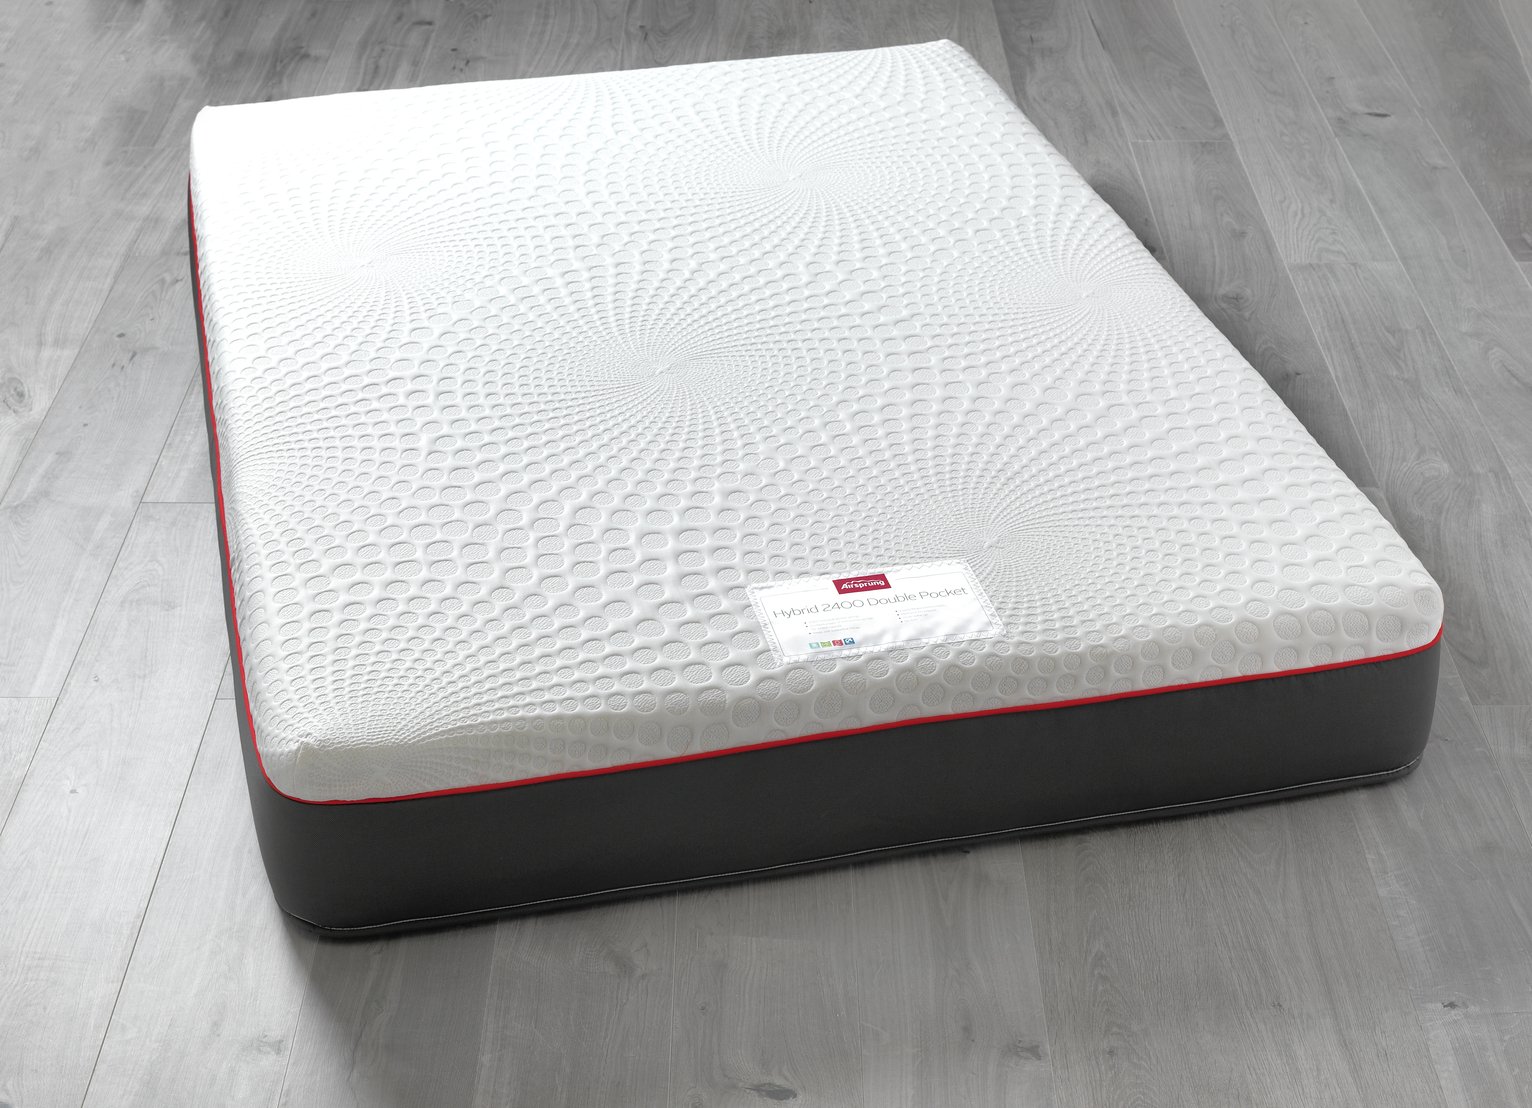 airsprung cushion top mattress